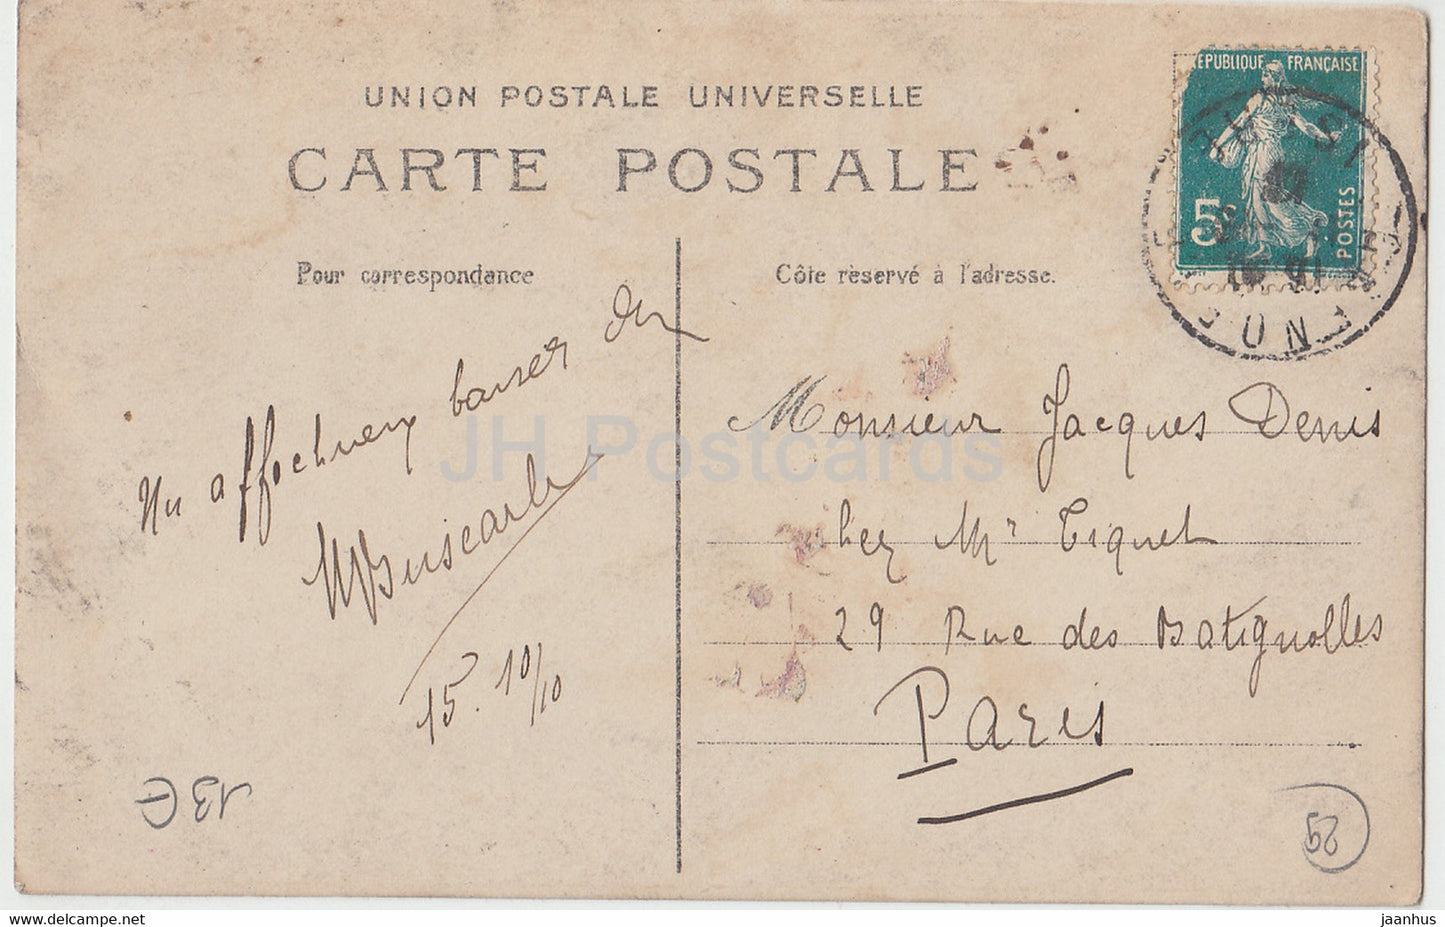 Concarneau - voilier - carte postale ancienne - France - occasion